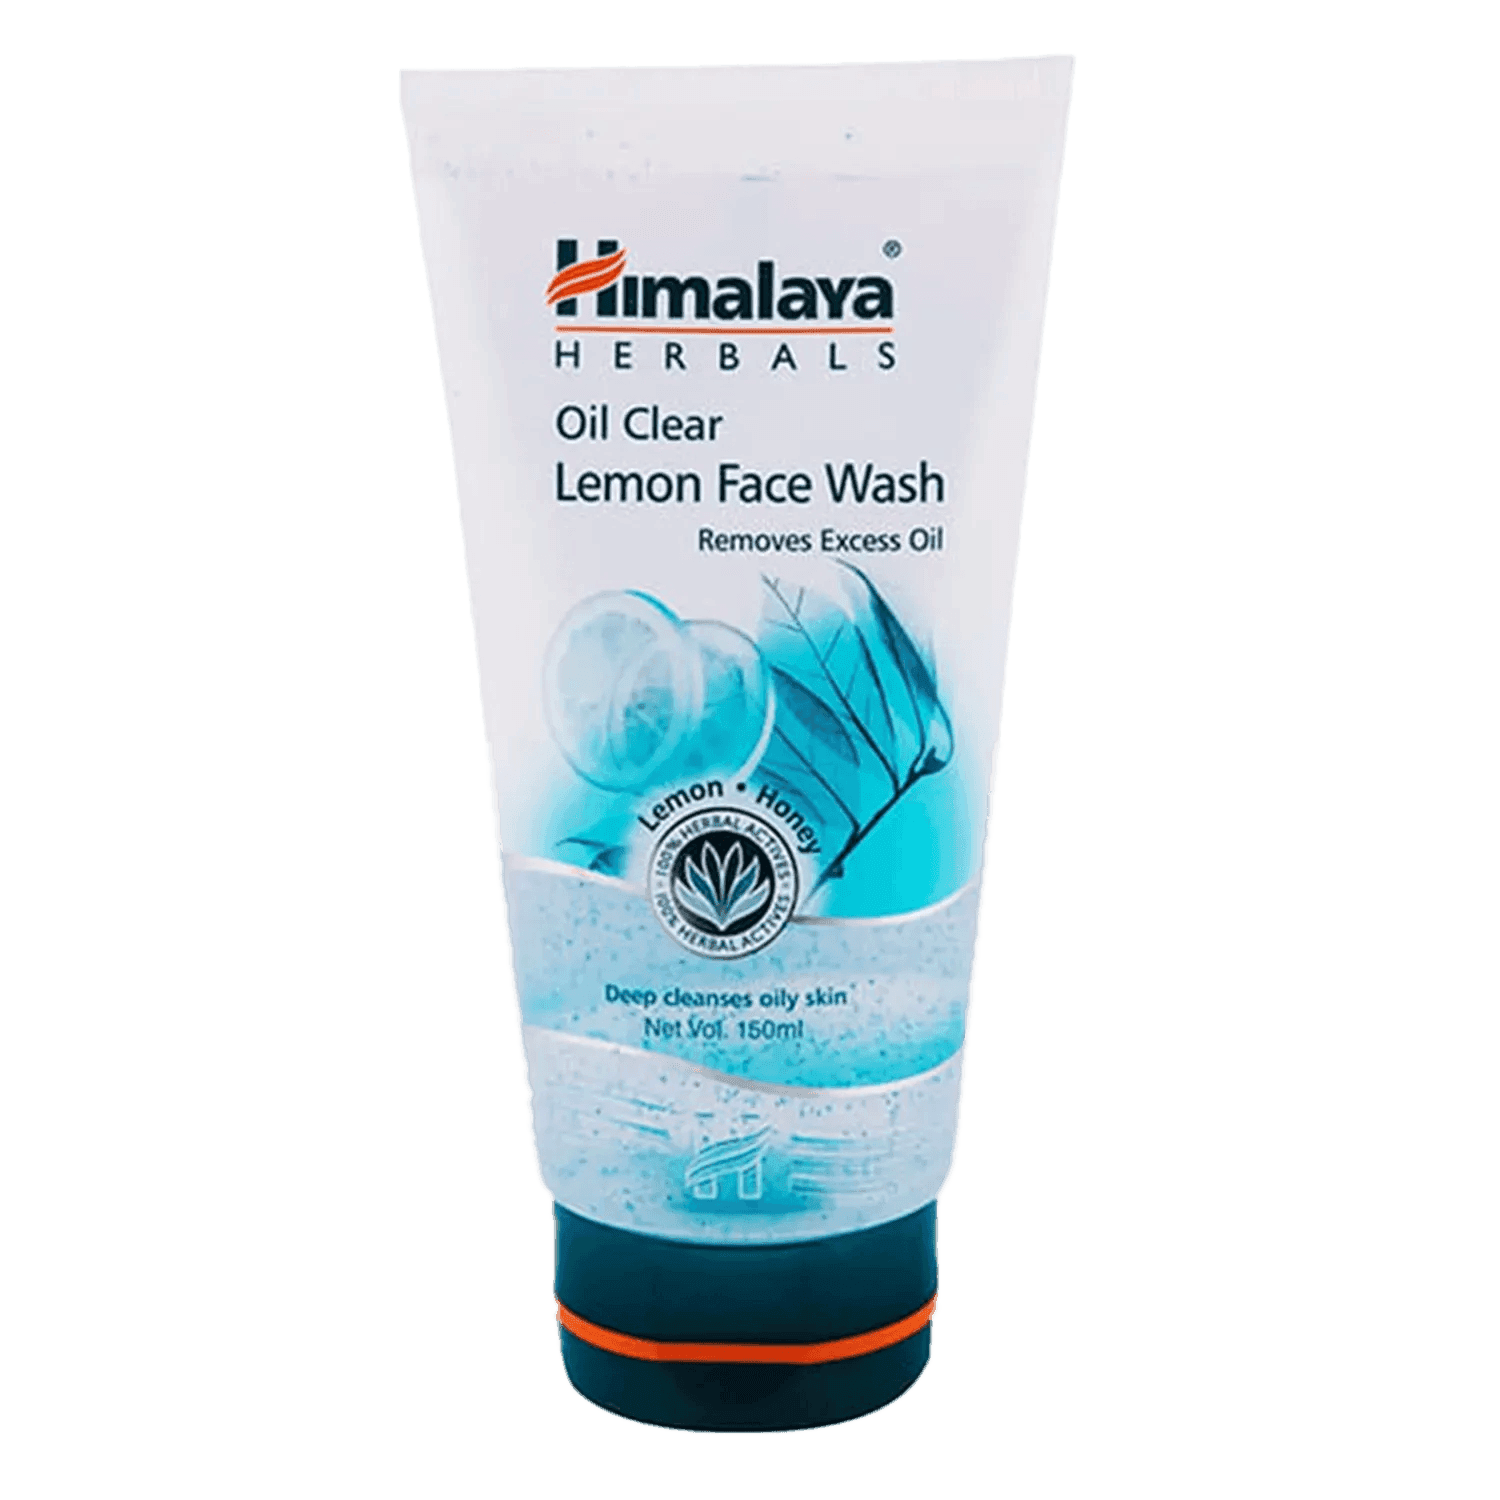 himalaya oil clear lemon face wash (150ml)